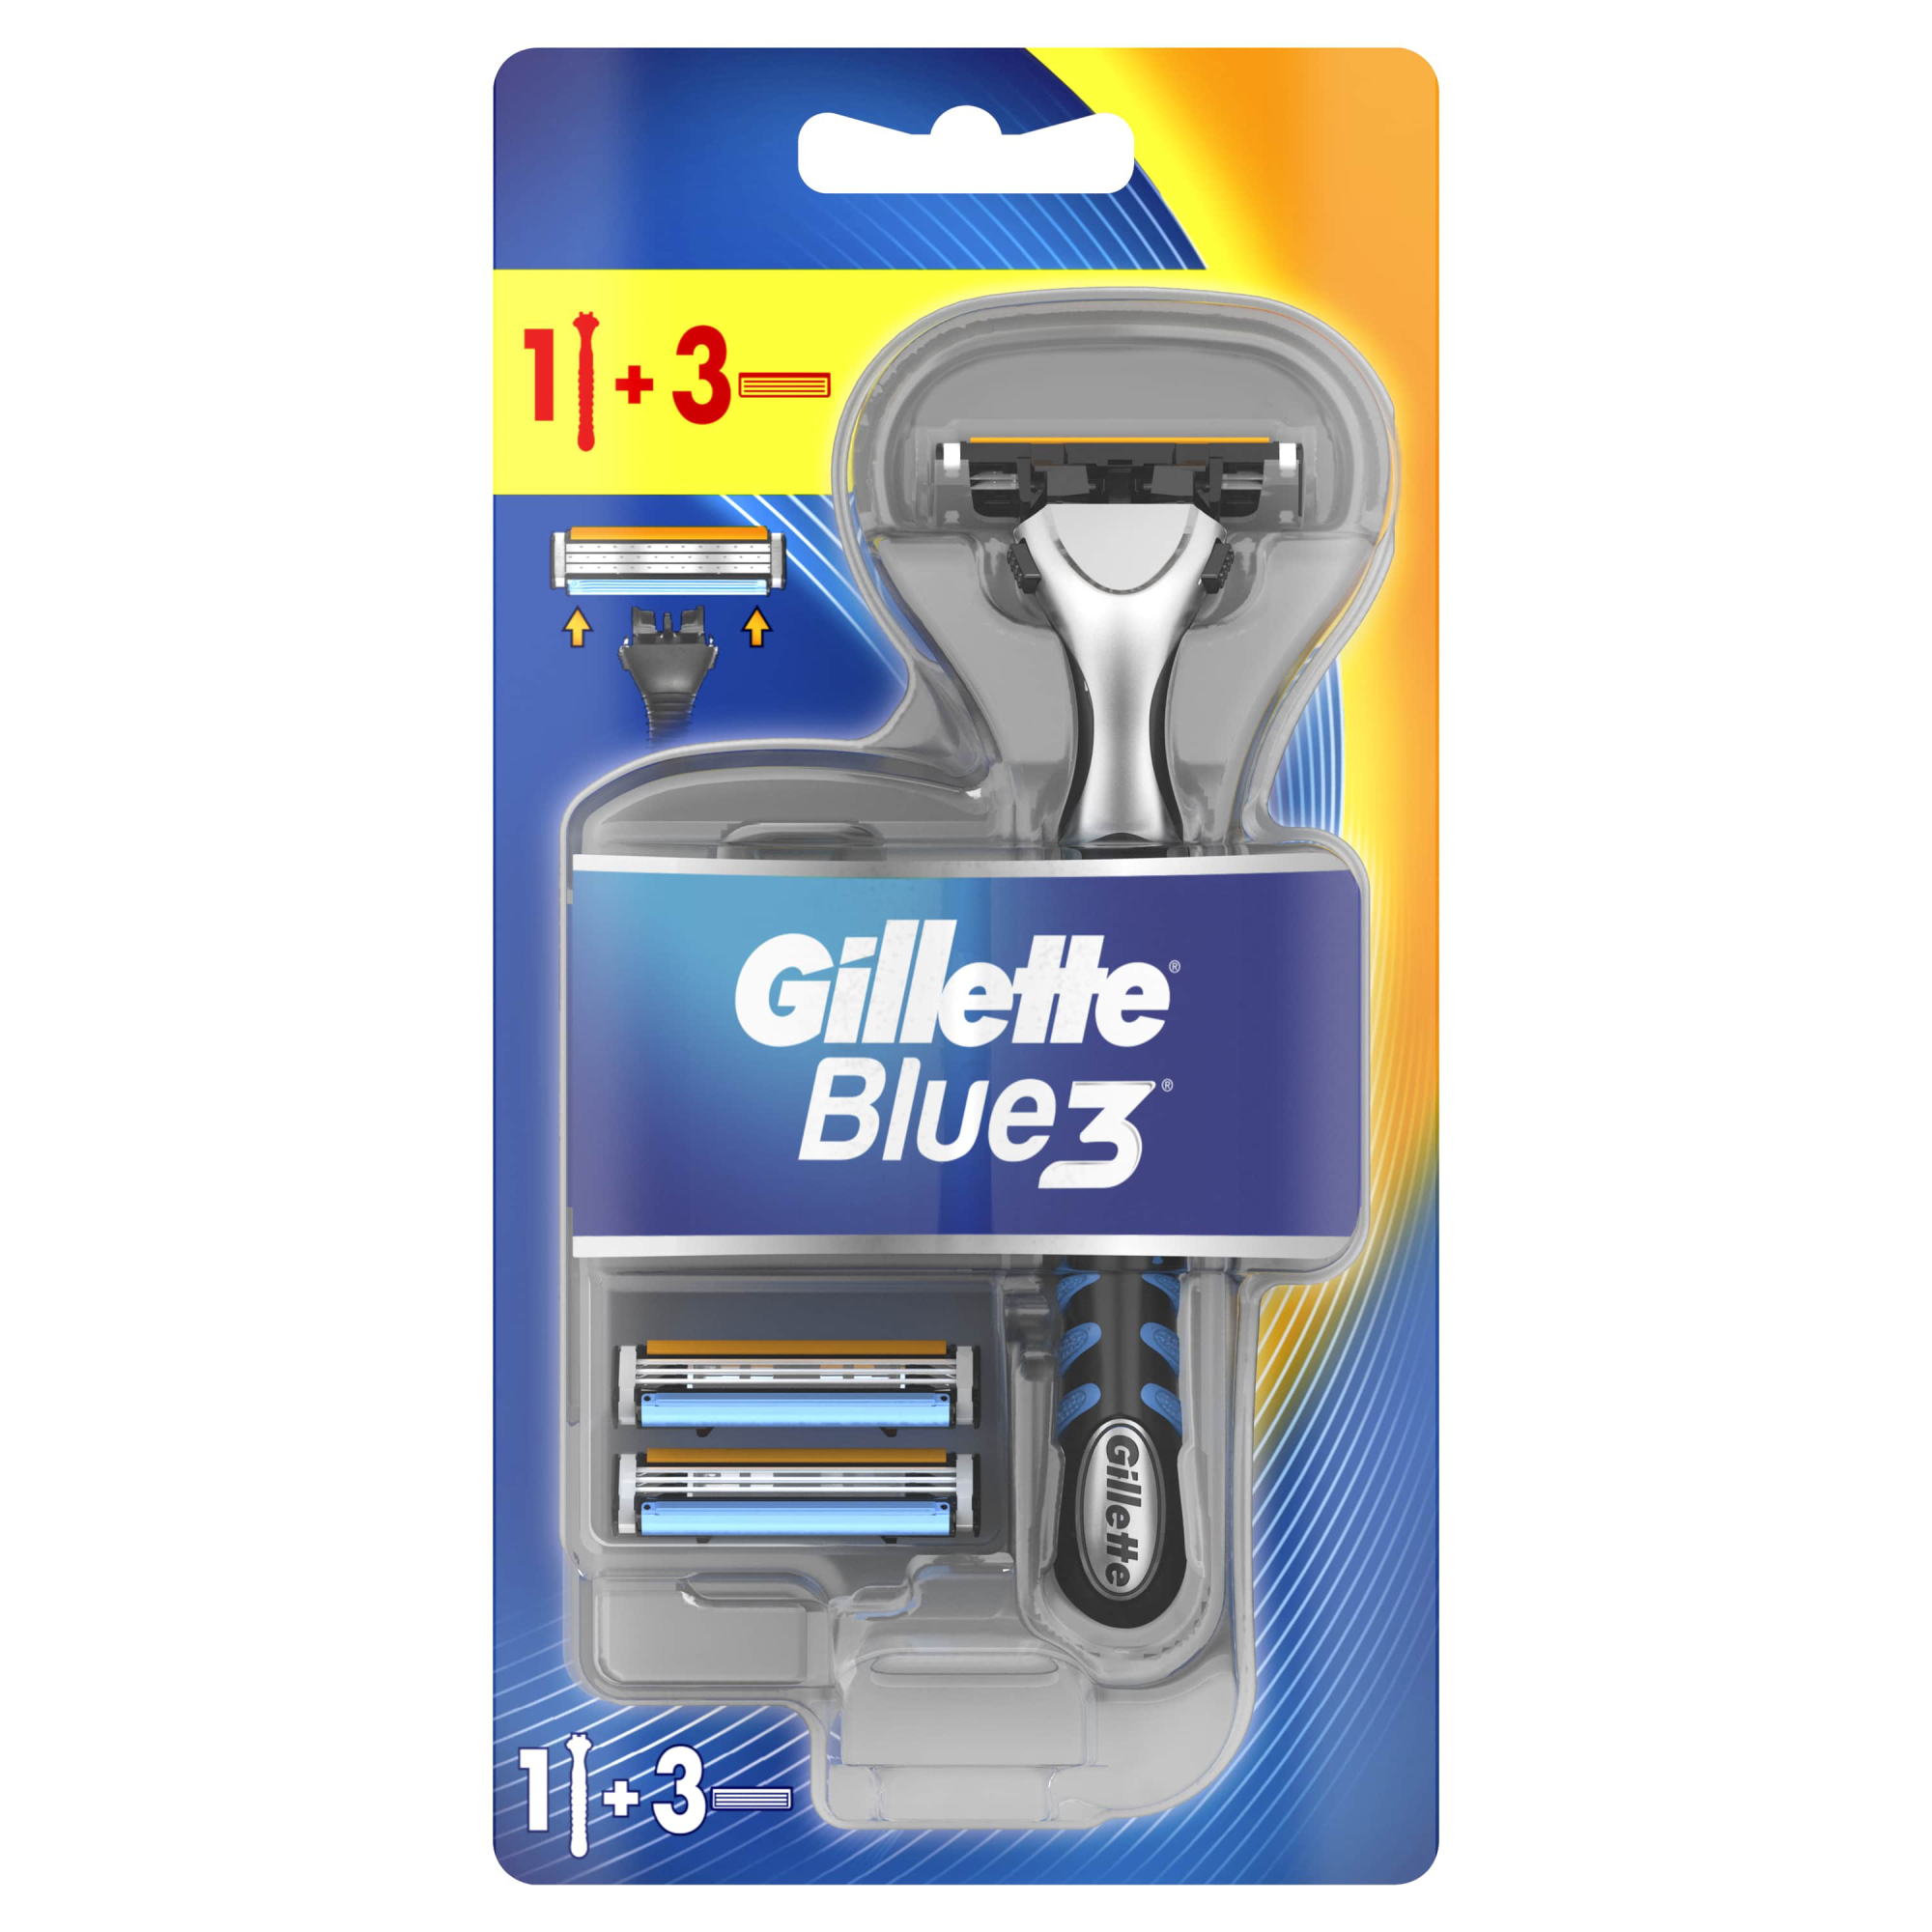 Мужская бритва Gillette Blue3, 3 кассеты, с 3 лезвиями, плавающая головка бритвенный станок bic click soleil 3 sensitive с тройным лезвием 2 сменные кассеты